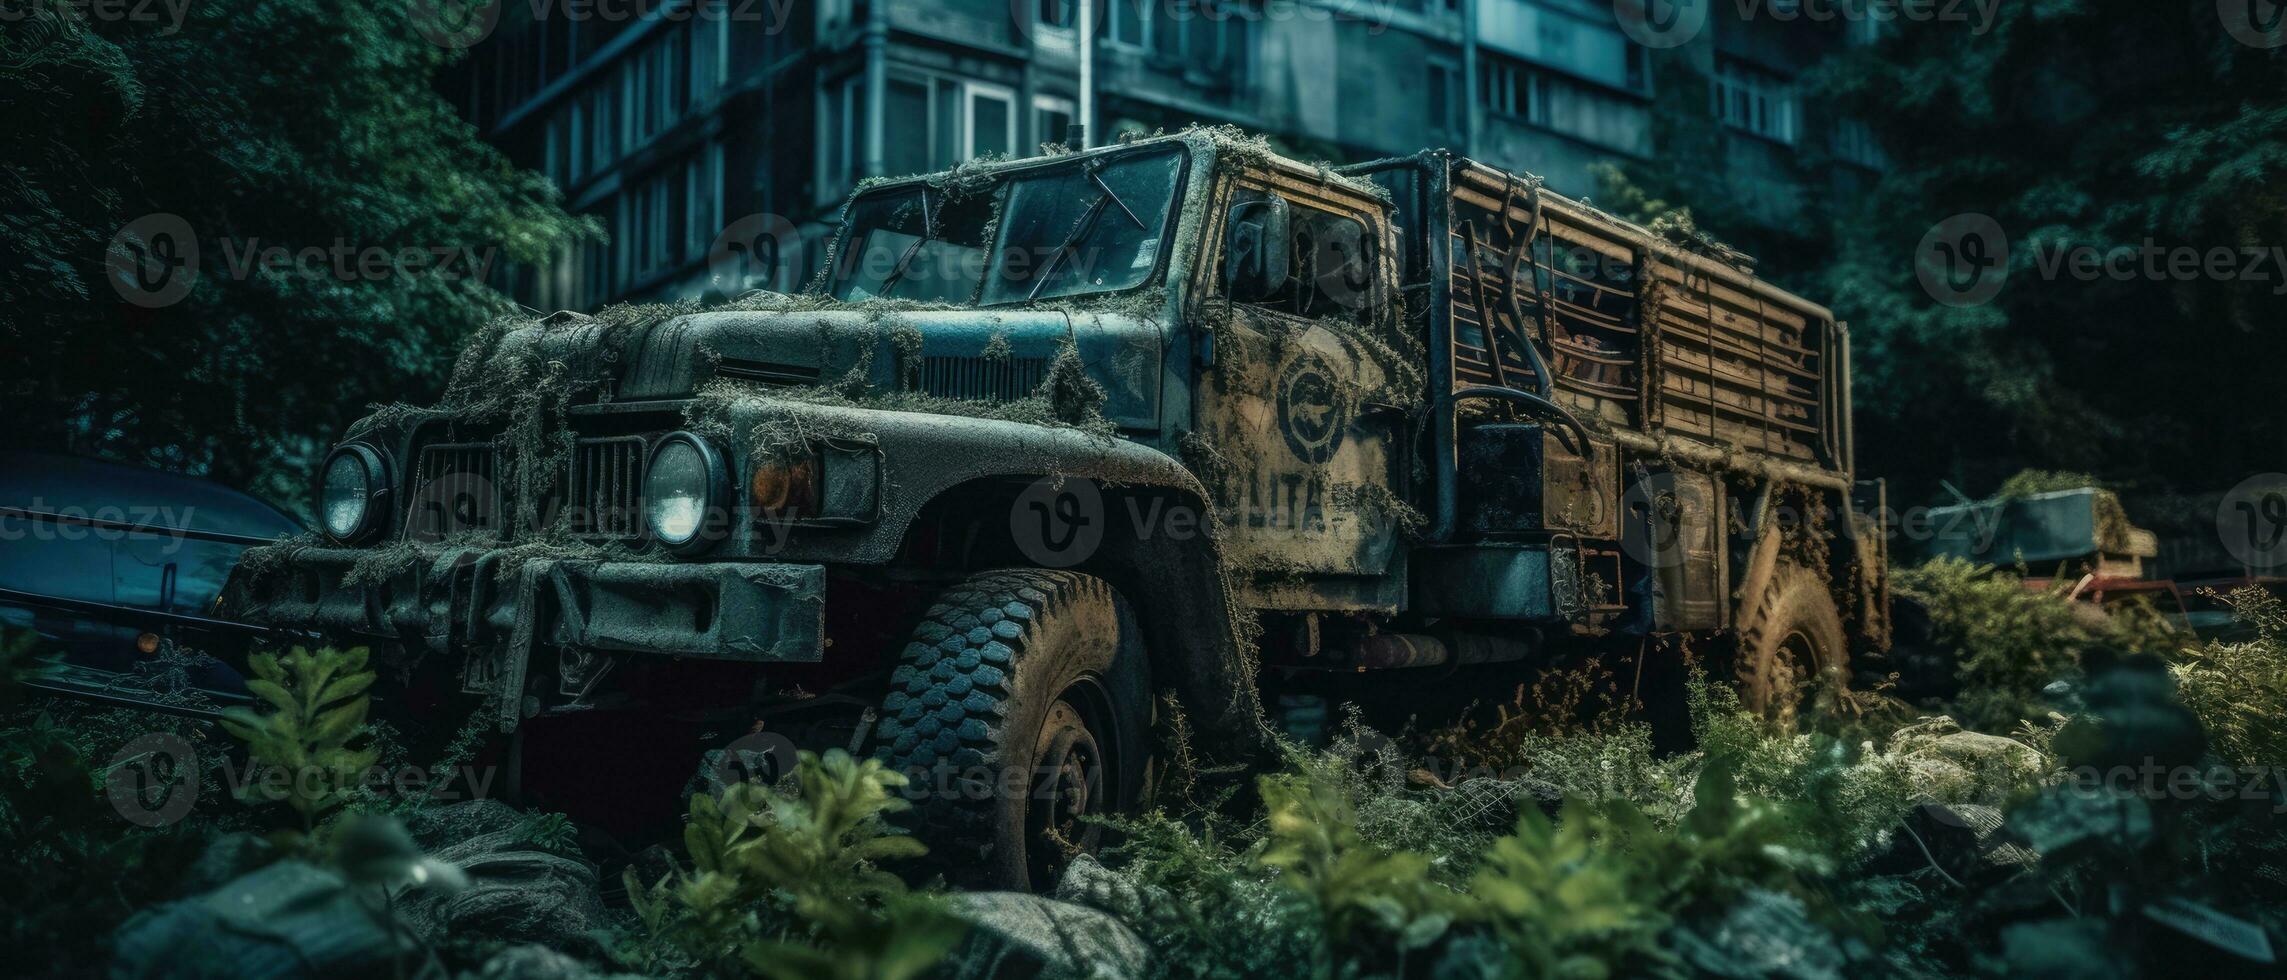 jeep un camion militaire voiture Publier apocalypse paysage Jeu fond d'écran photo art illustration rouille